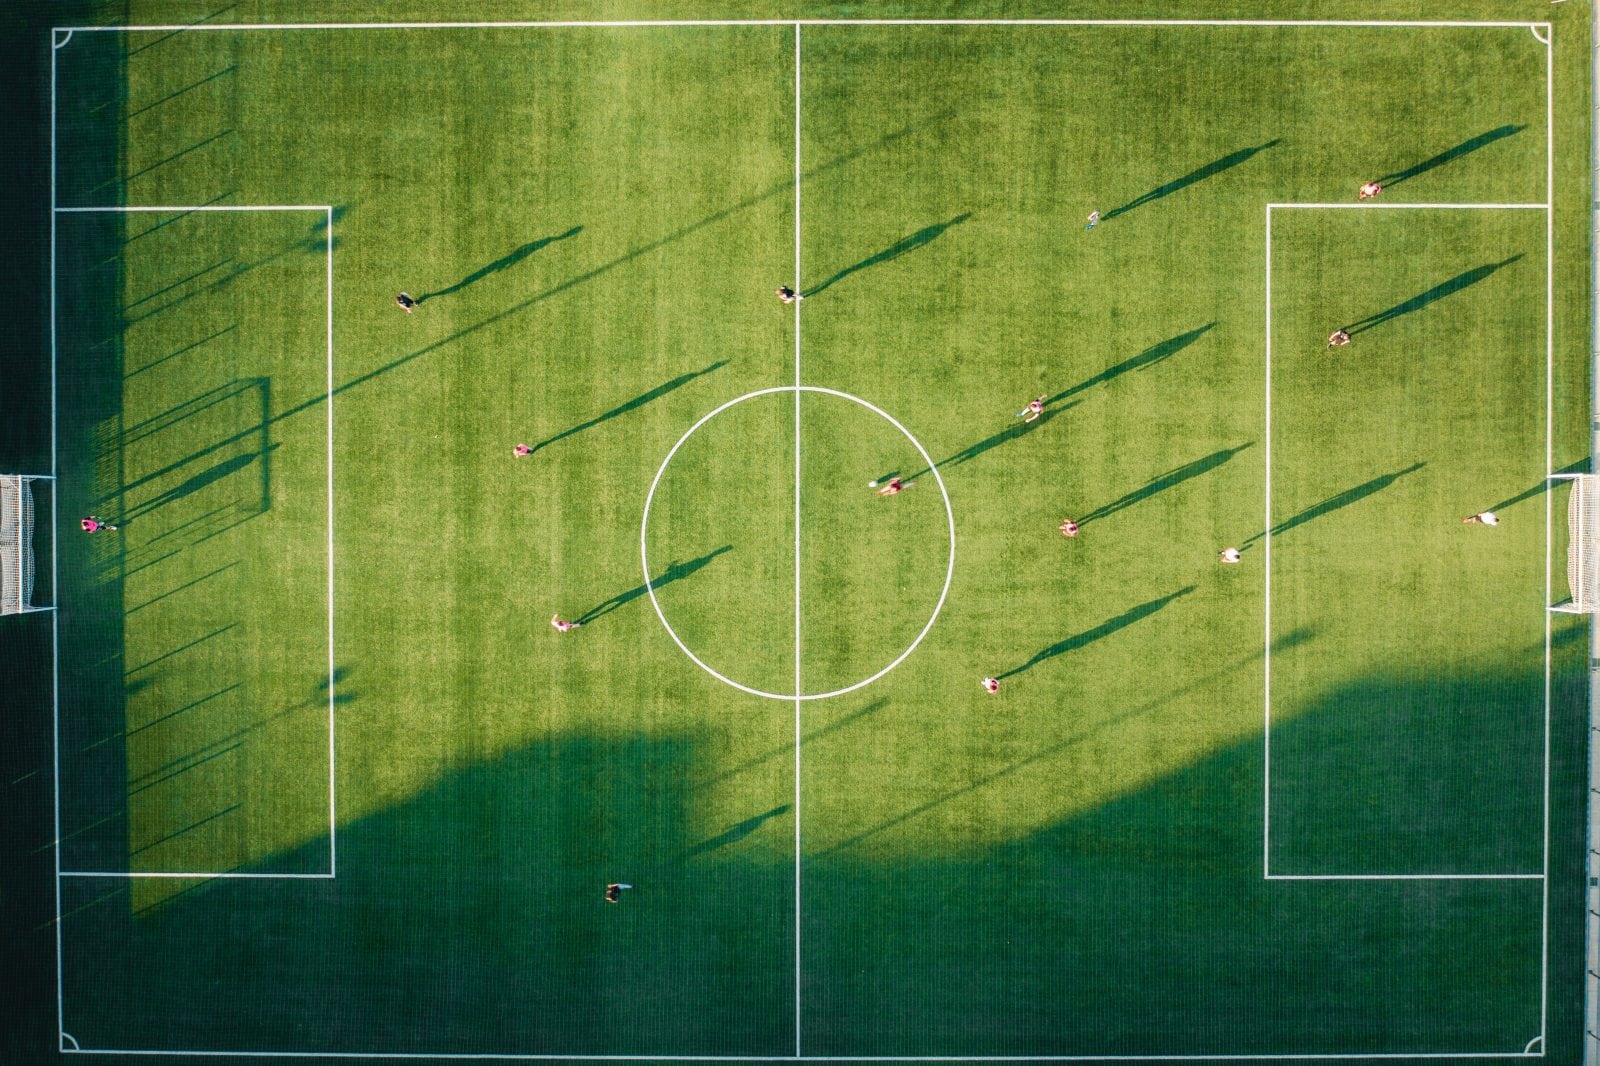 Soccer match on grass field 1206232 1